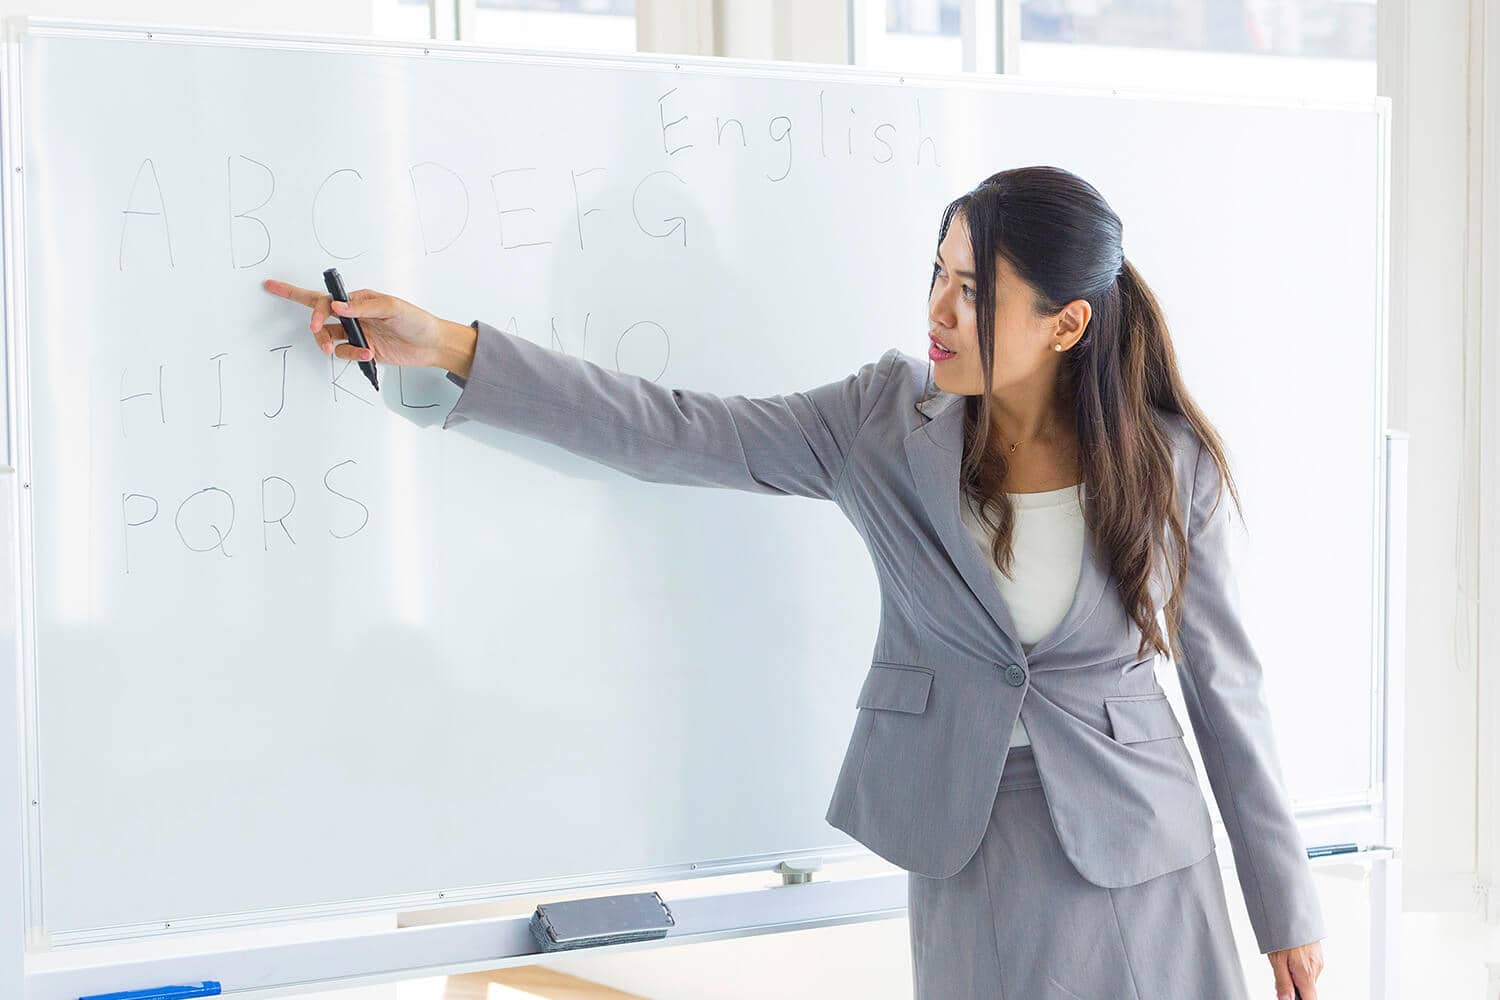 Women teacher teaching the alphabet on a whiteboard